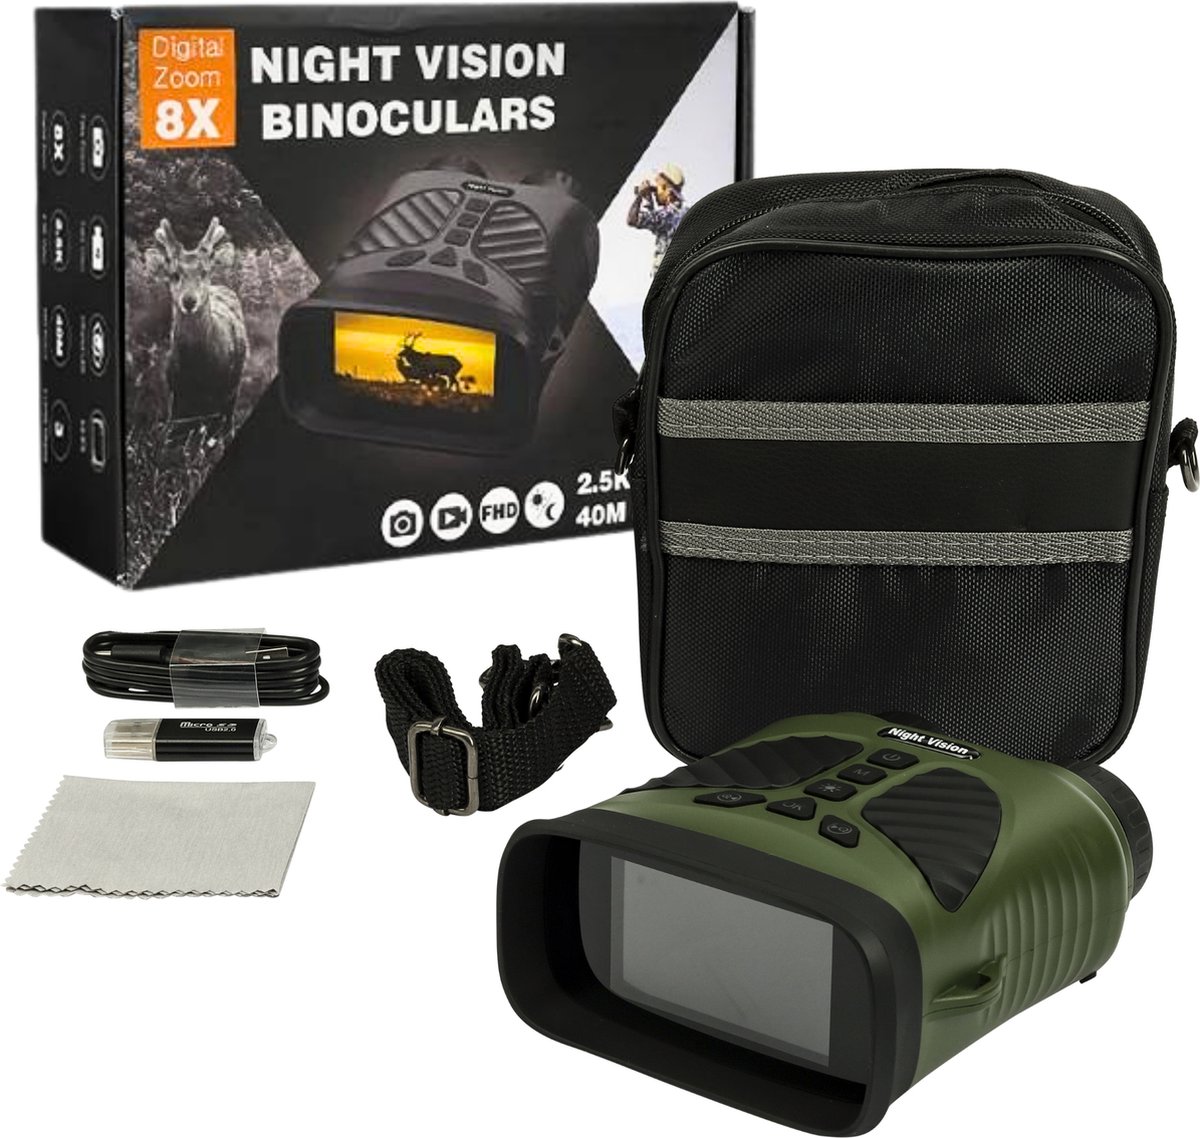 Foofy® Nachtkijker met Infrarood - Verrekijker met Nachtzicht - Wildcamera - 300 Meter - Video en Foto opname - Met Beschermhoes en USB stick